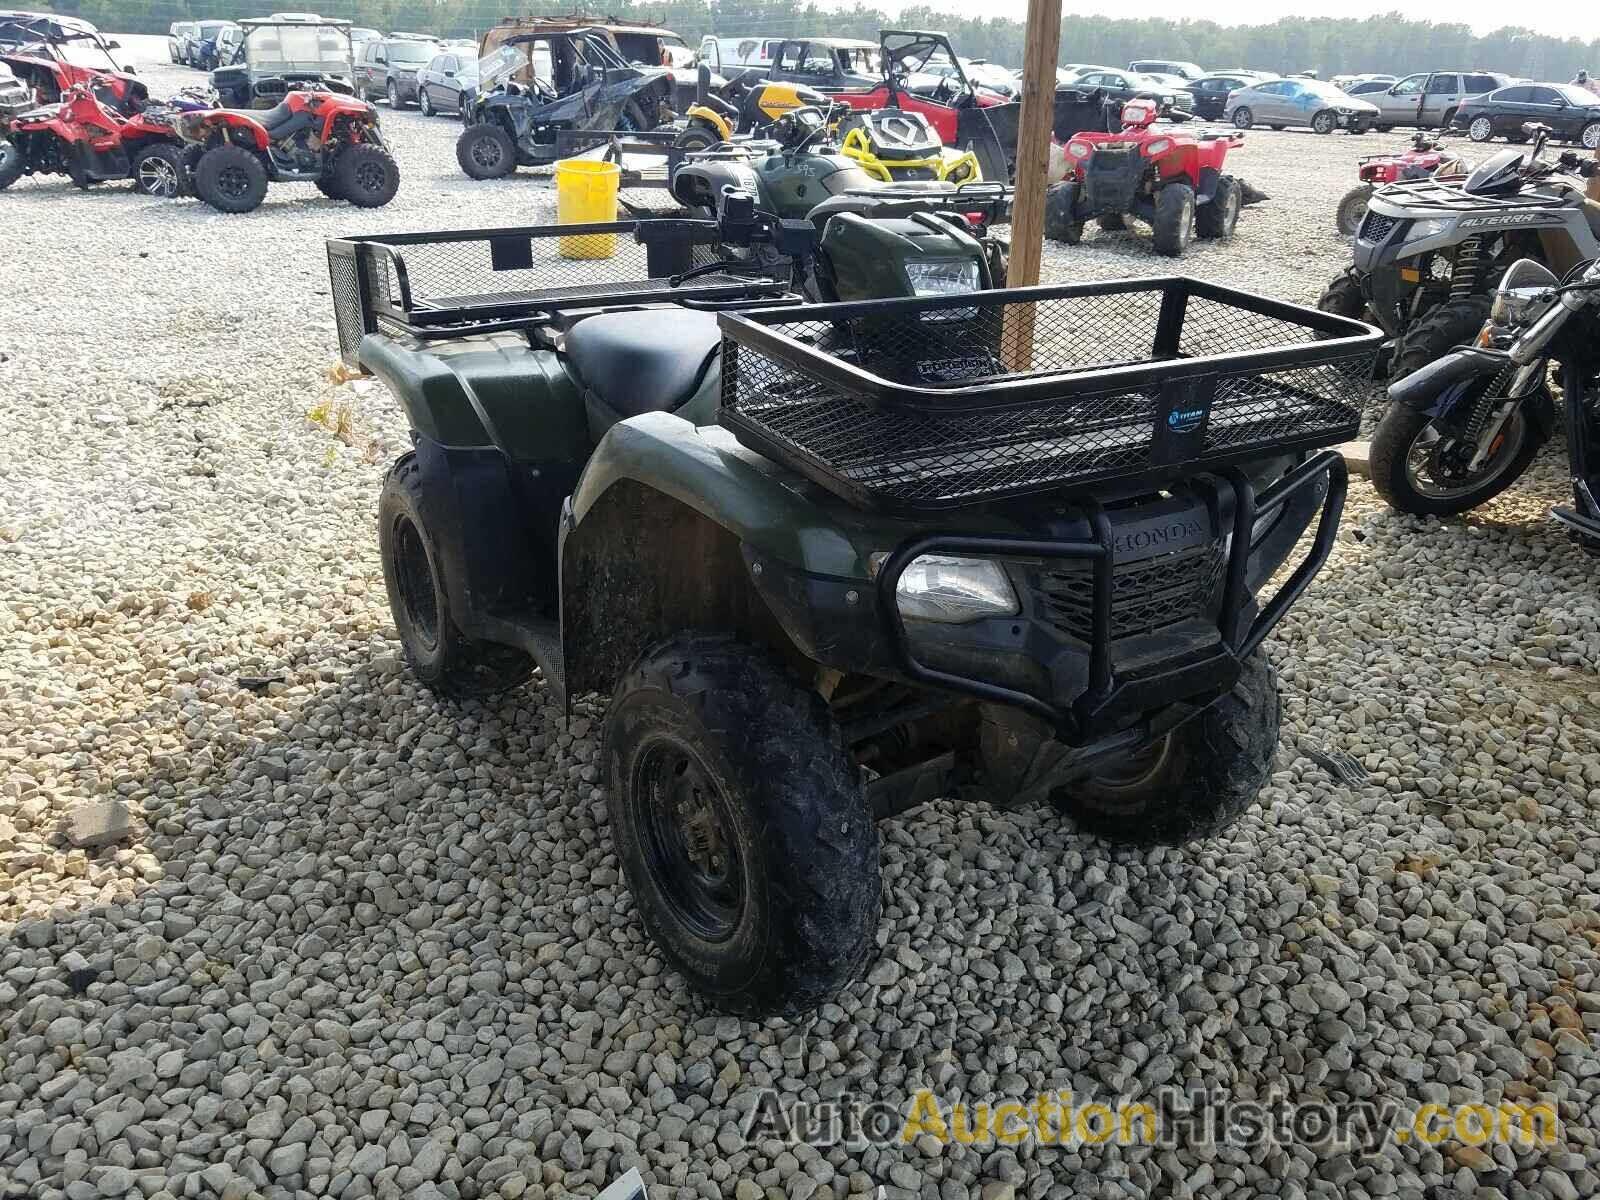 2014 HONDA ATV FE, 1HFTE4462E4001290